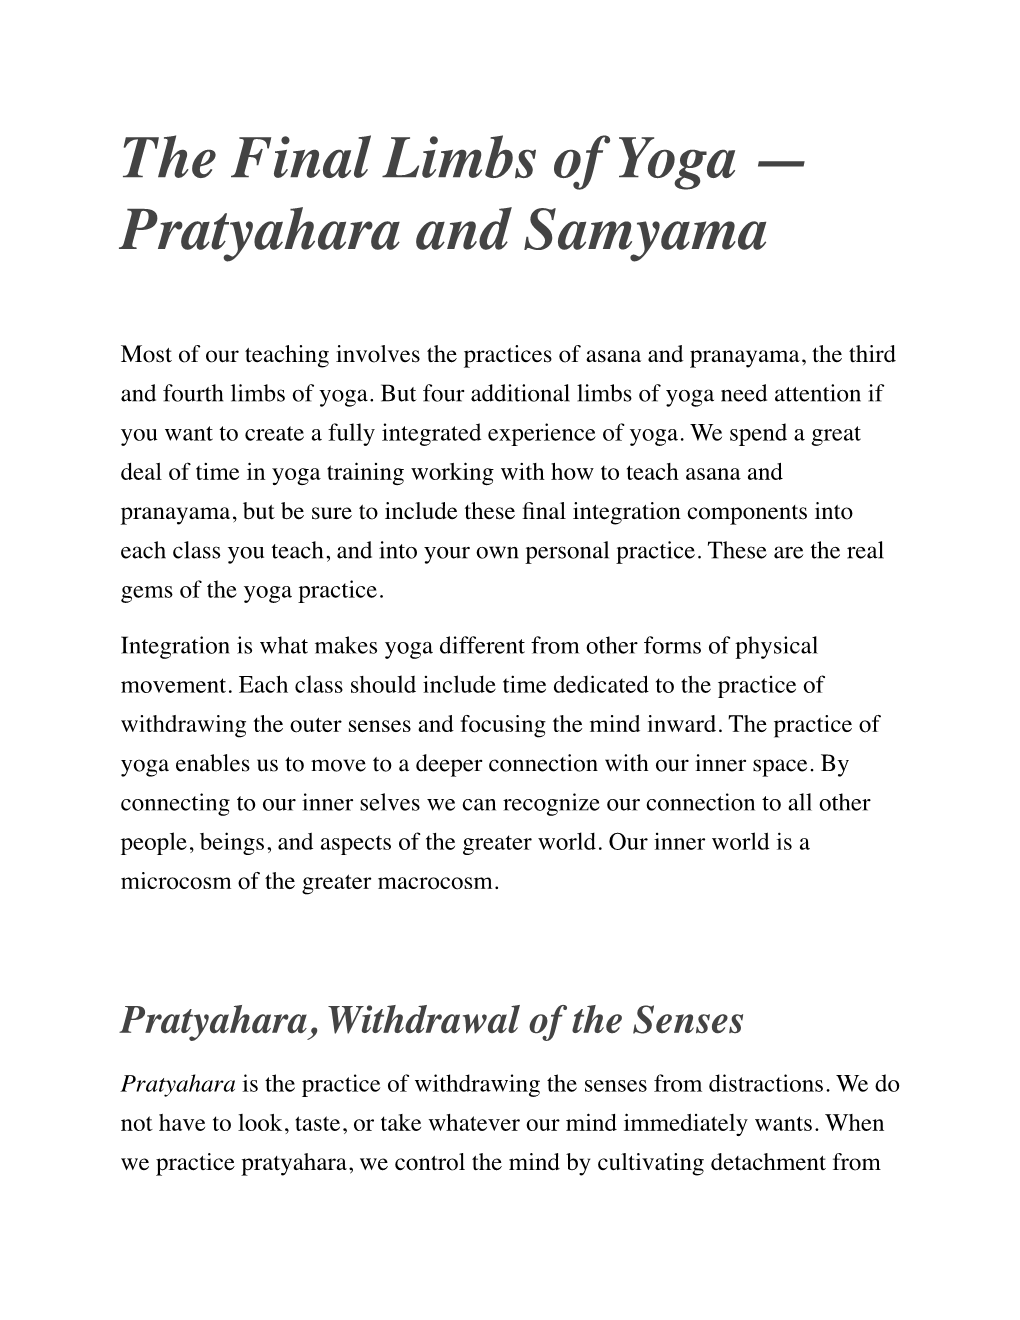 Pratyahara and Samyama